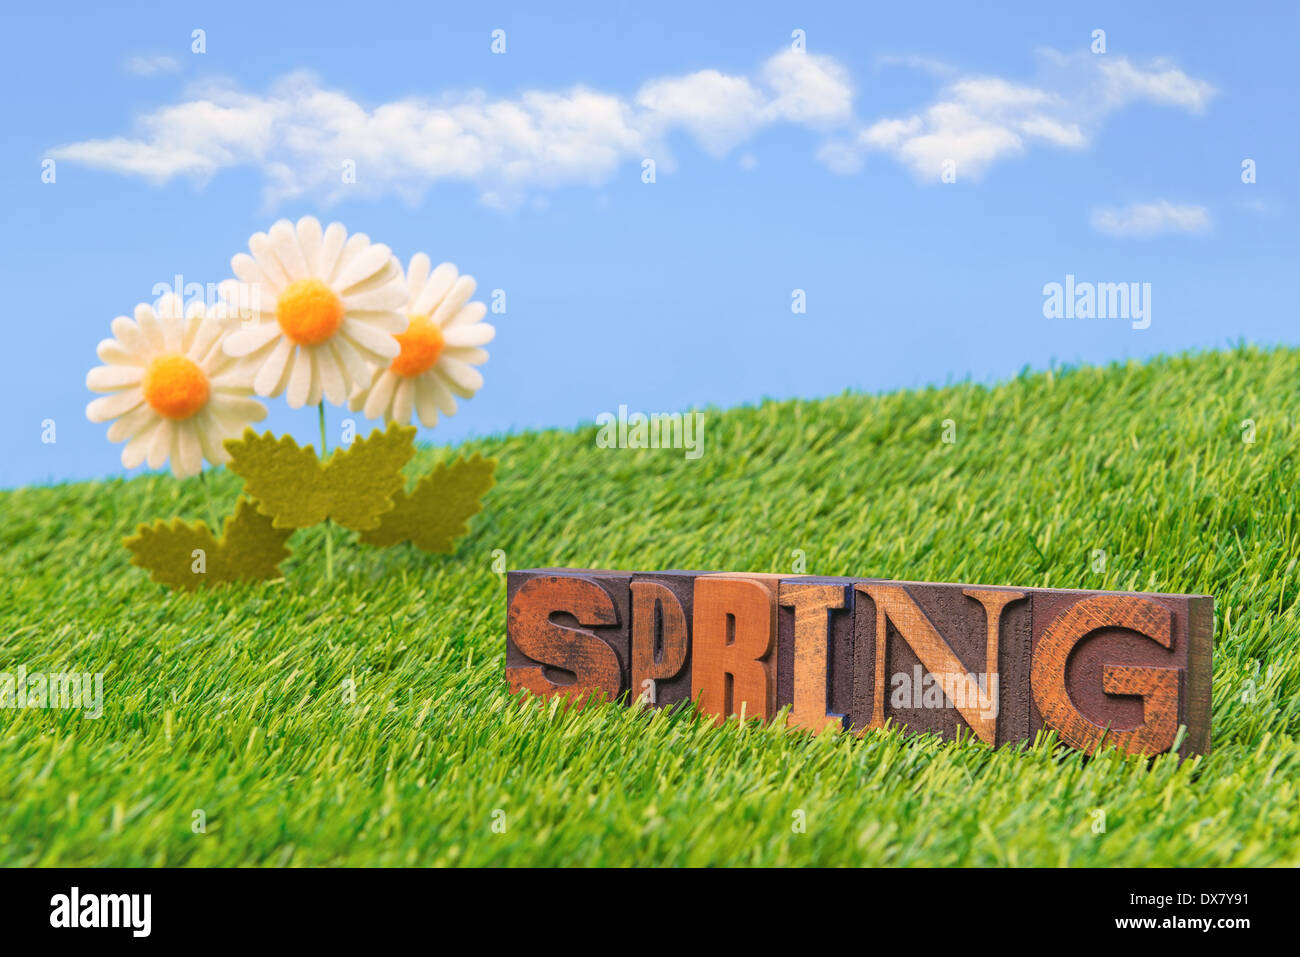 Das Wort Frühling im alten hölzernen Buchdruck mit grünem Rasen, weiße Margeriten und ein strahlend blauer Himmel mit weißen flauschigen Wolken. Stockfoto